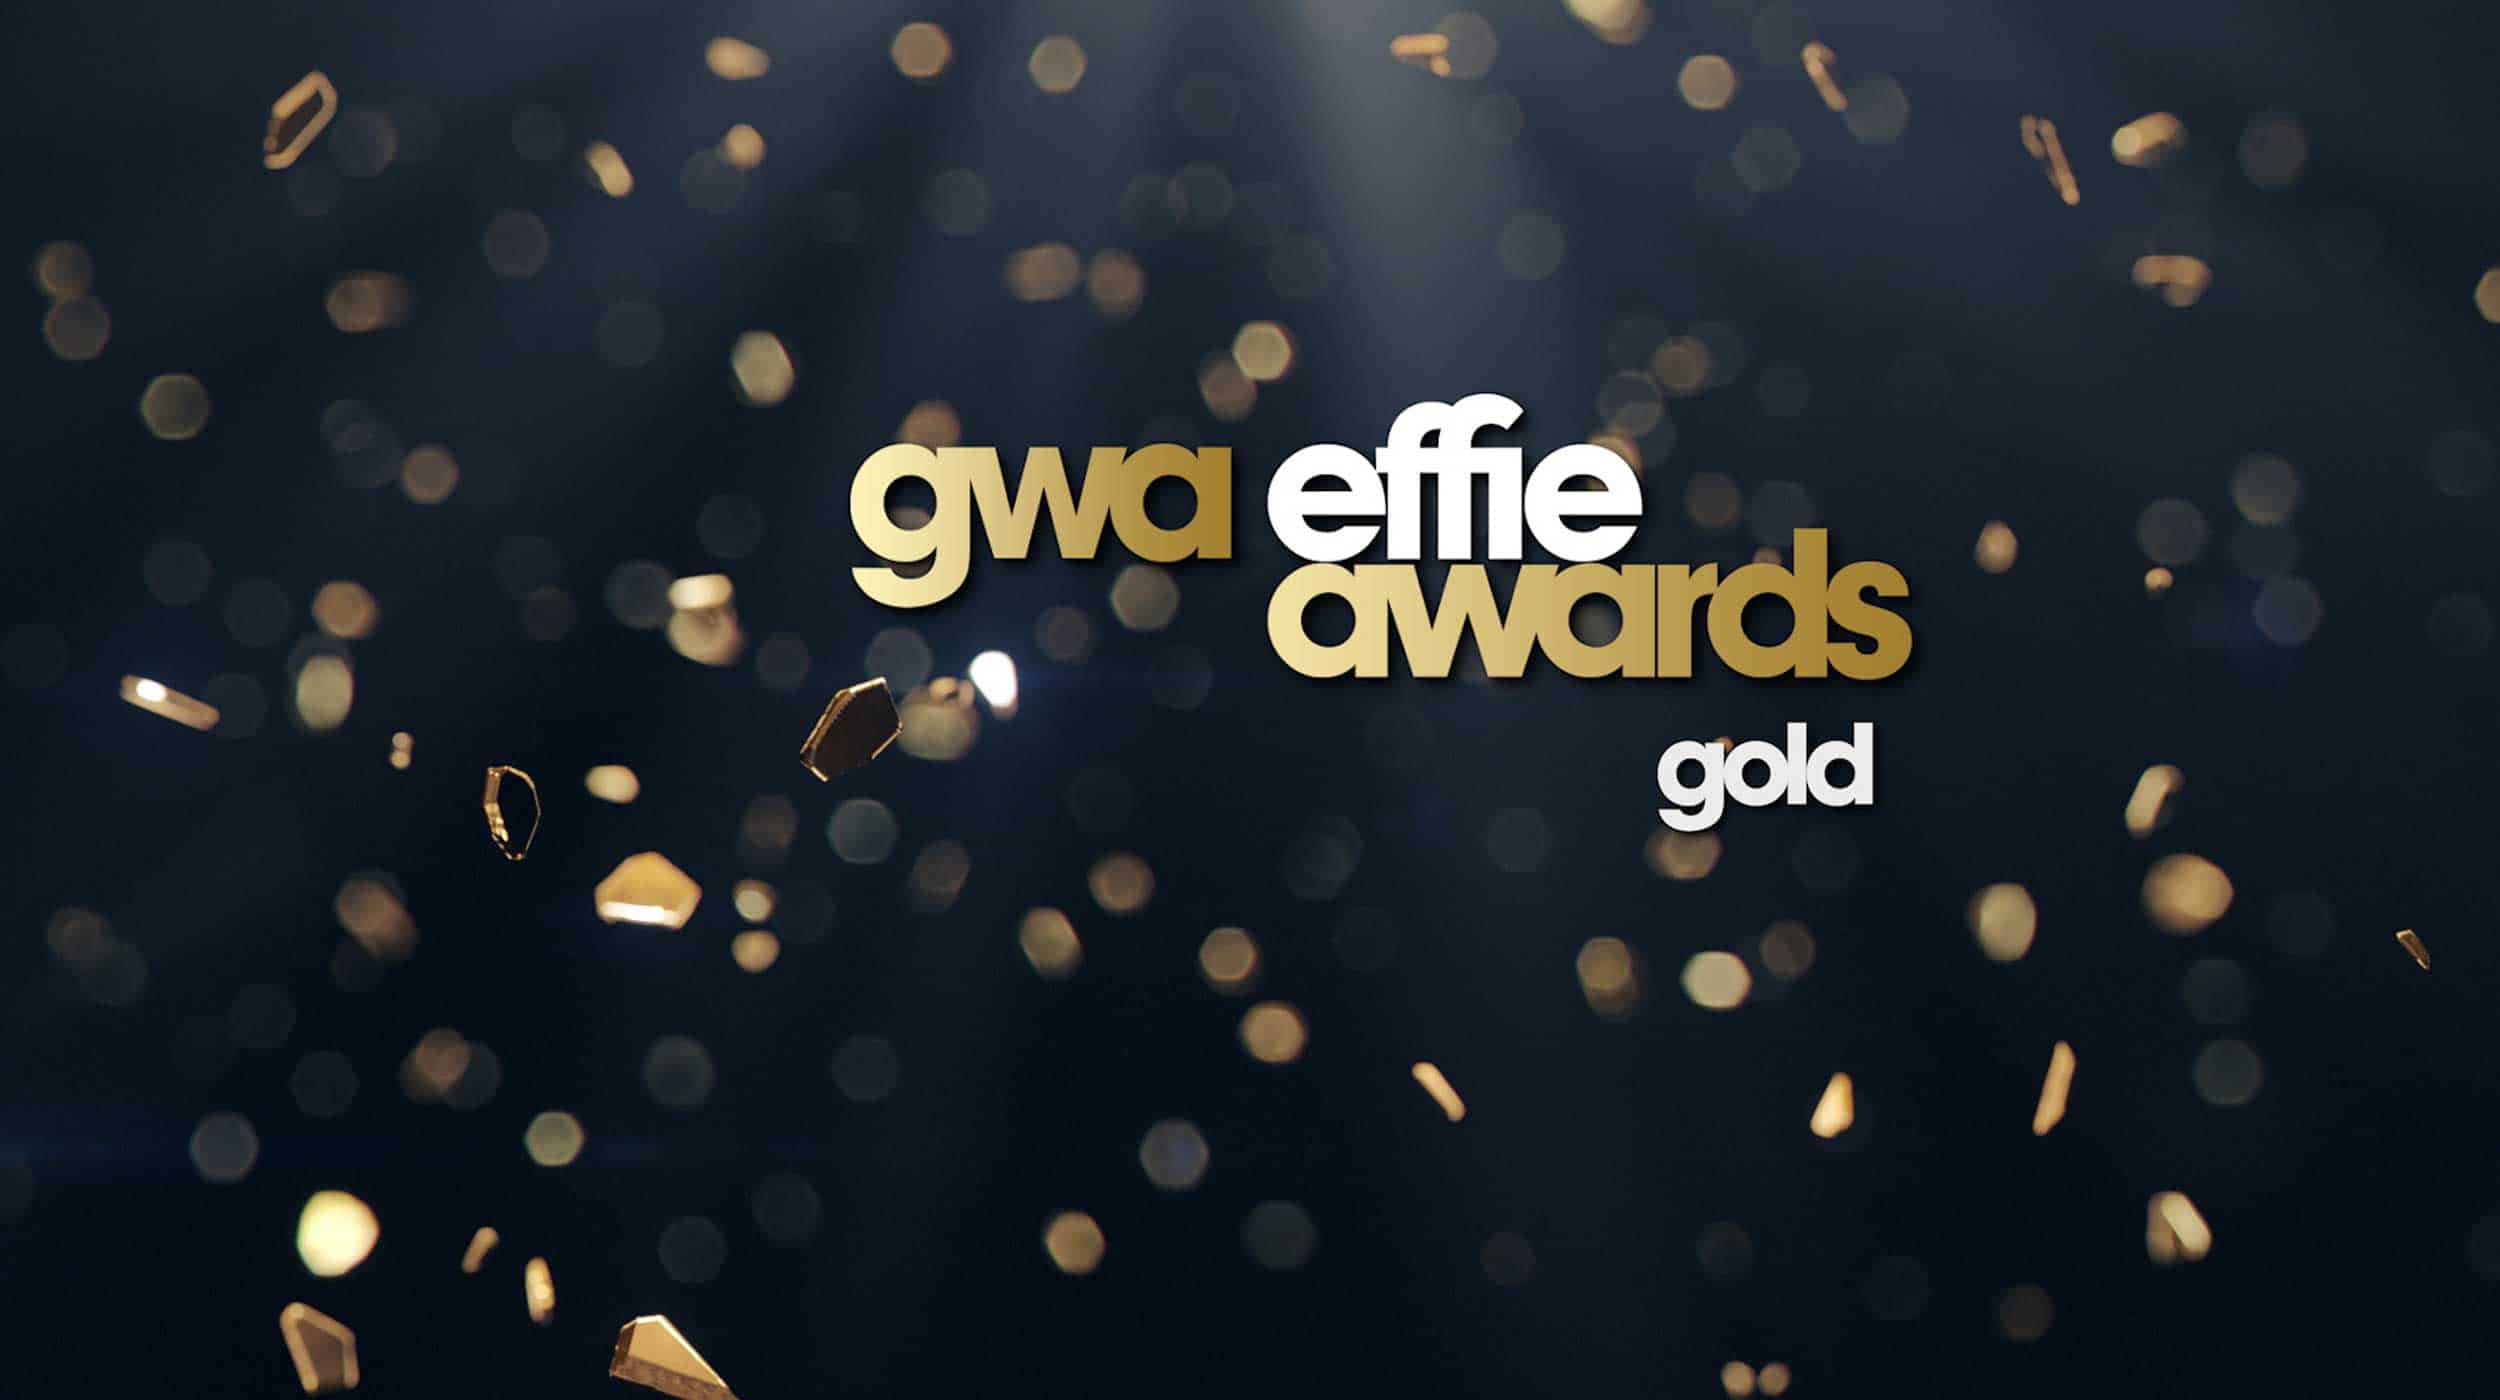 neiser filmproduktion Düsseldorf gwa Effie awards gold silber bronze Gewinner video